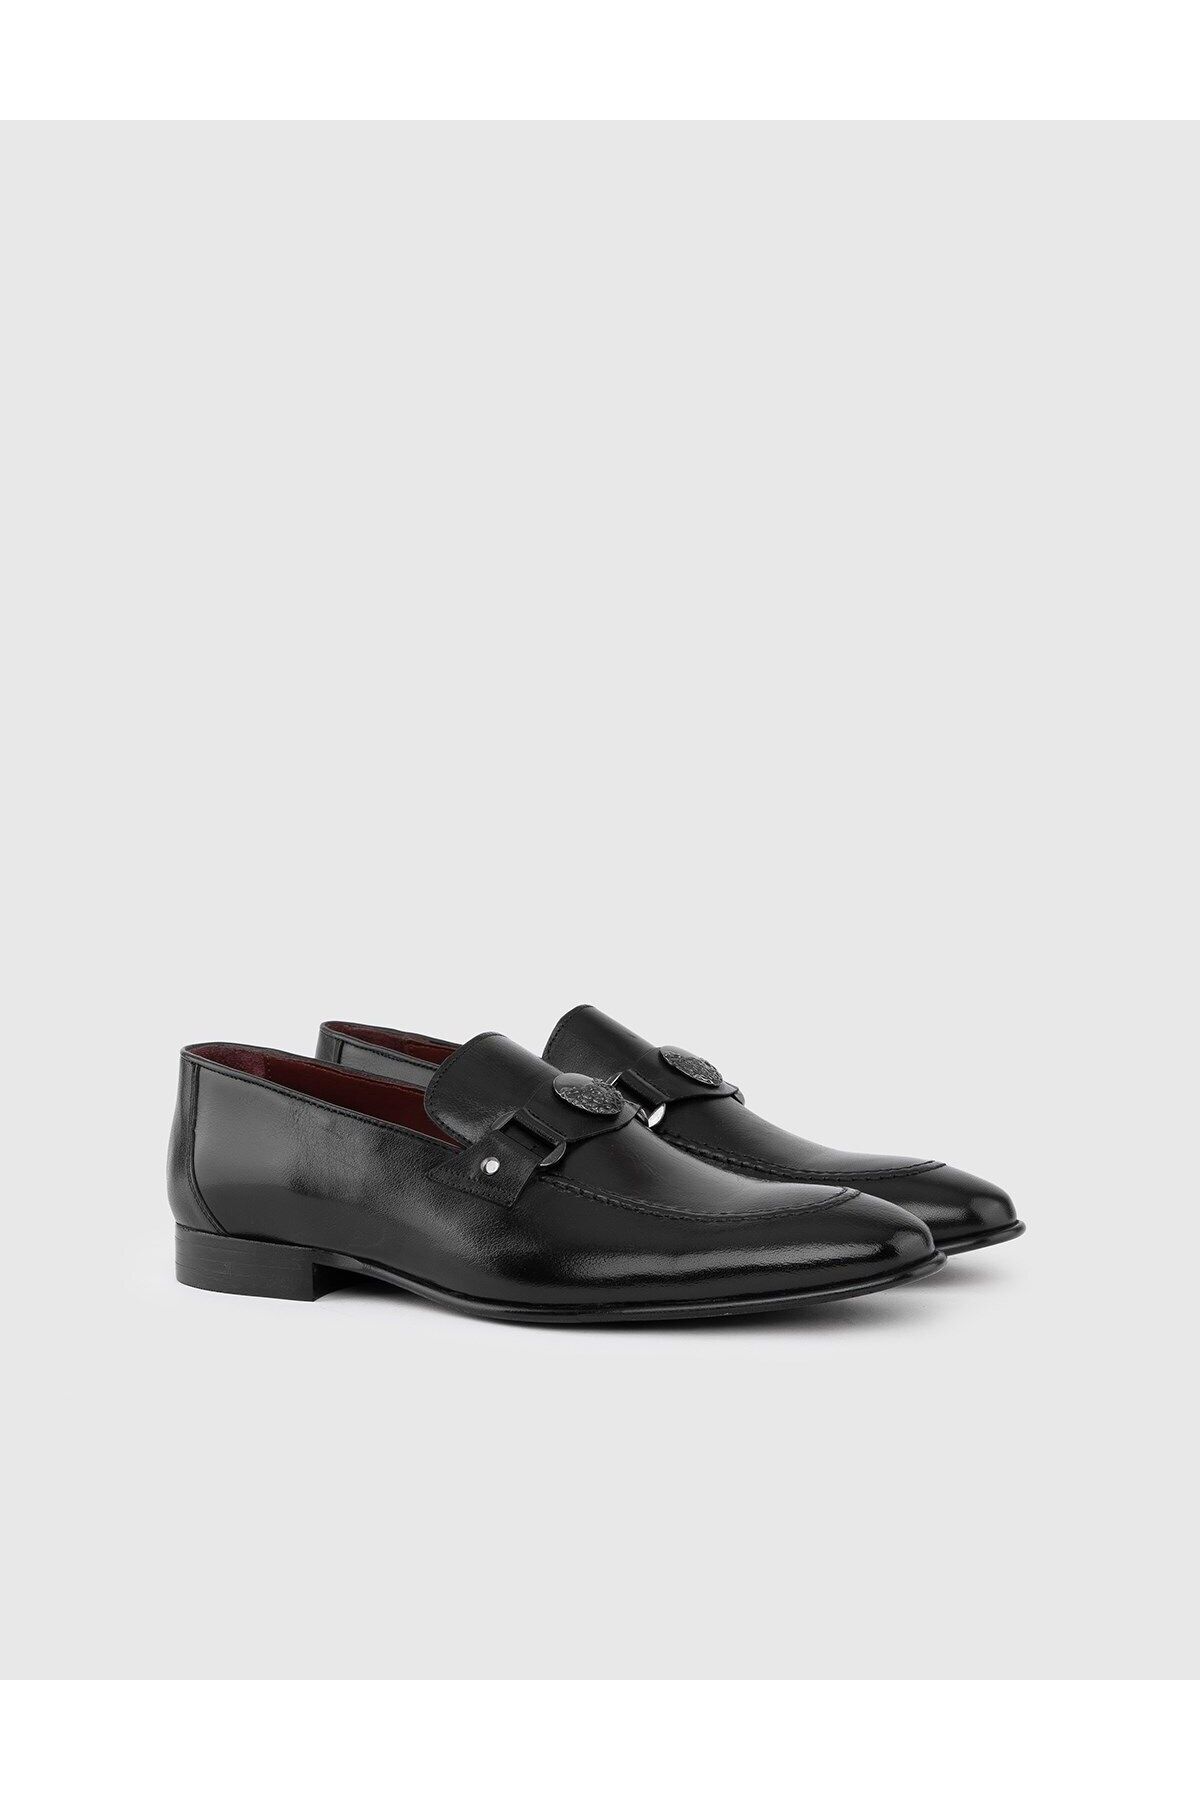 İlvi Birgit Hakiki Buffalo Deri Erkek Siyah Klasik Ayakkabı